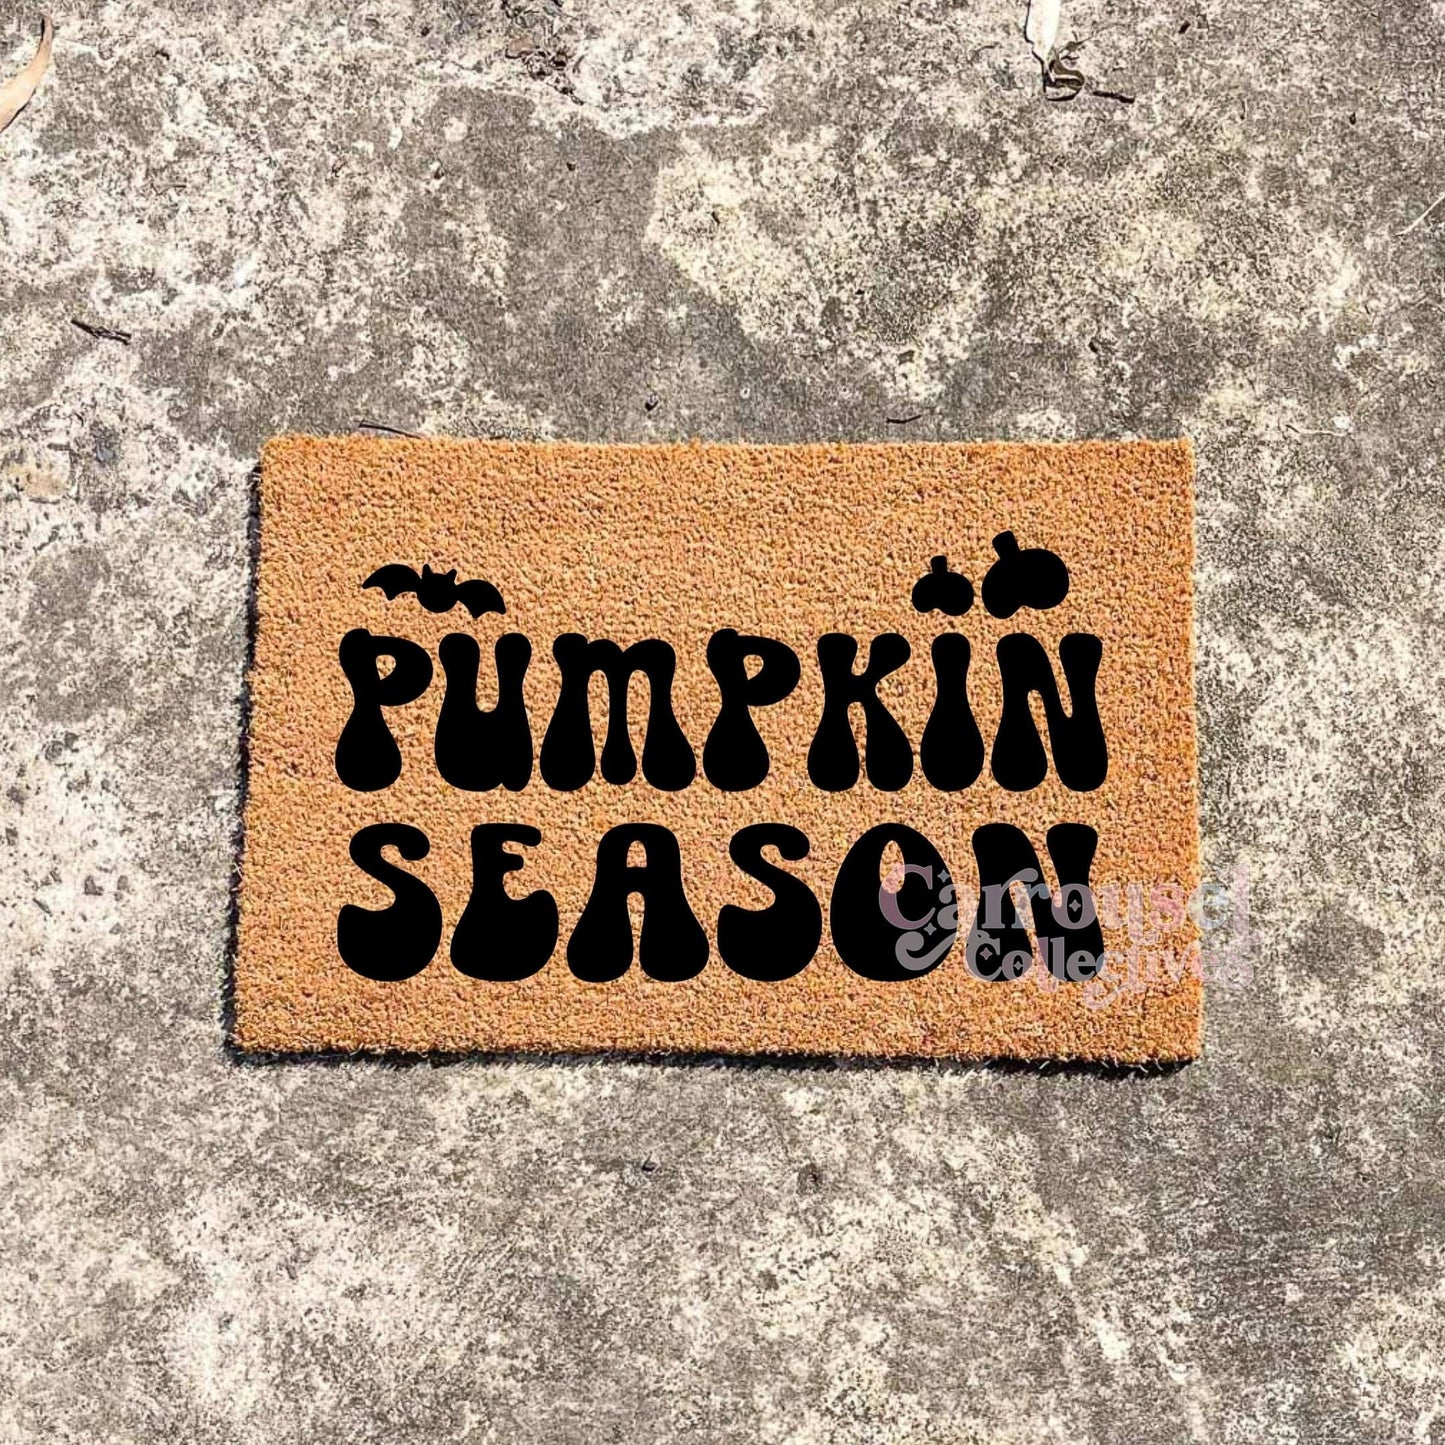 Pumpkin Season doormat, Halloween Doormat, Spooky Doormat, Creepy Doormat